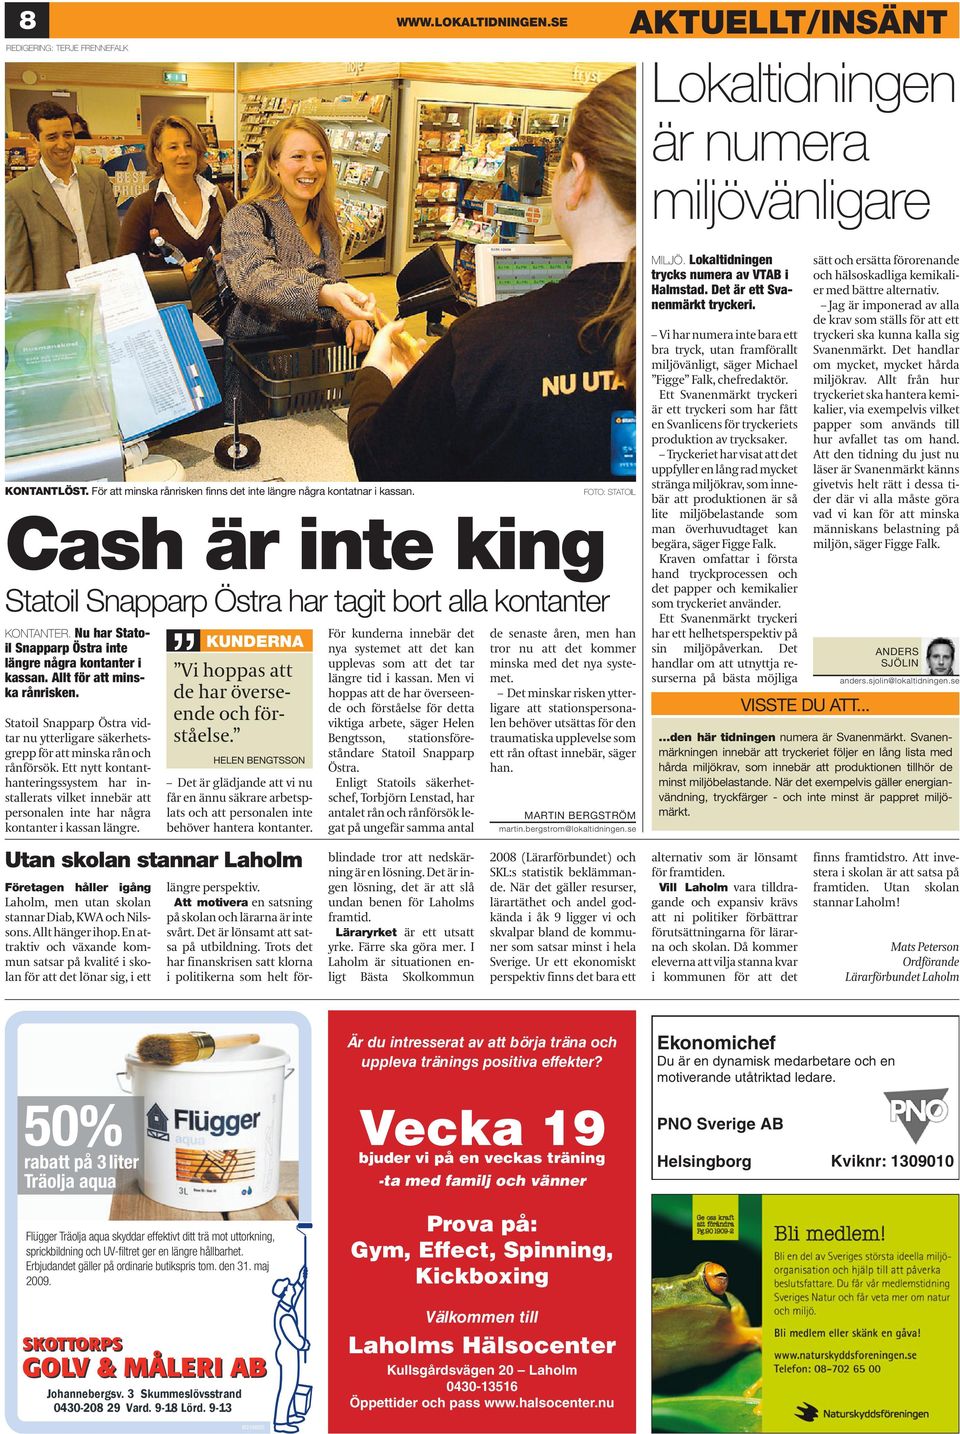 Statoil Snapparp Östra vidtar nu ytterligare säkerhetsgrepp för att minska rån och rånförsök.